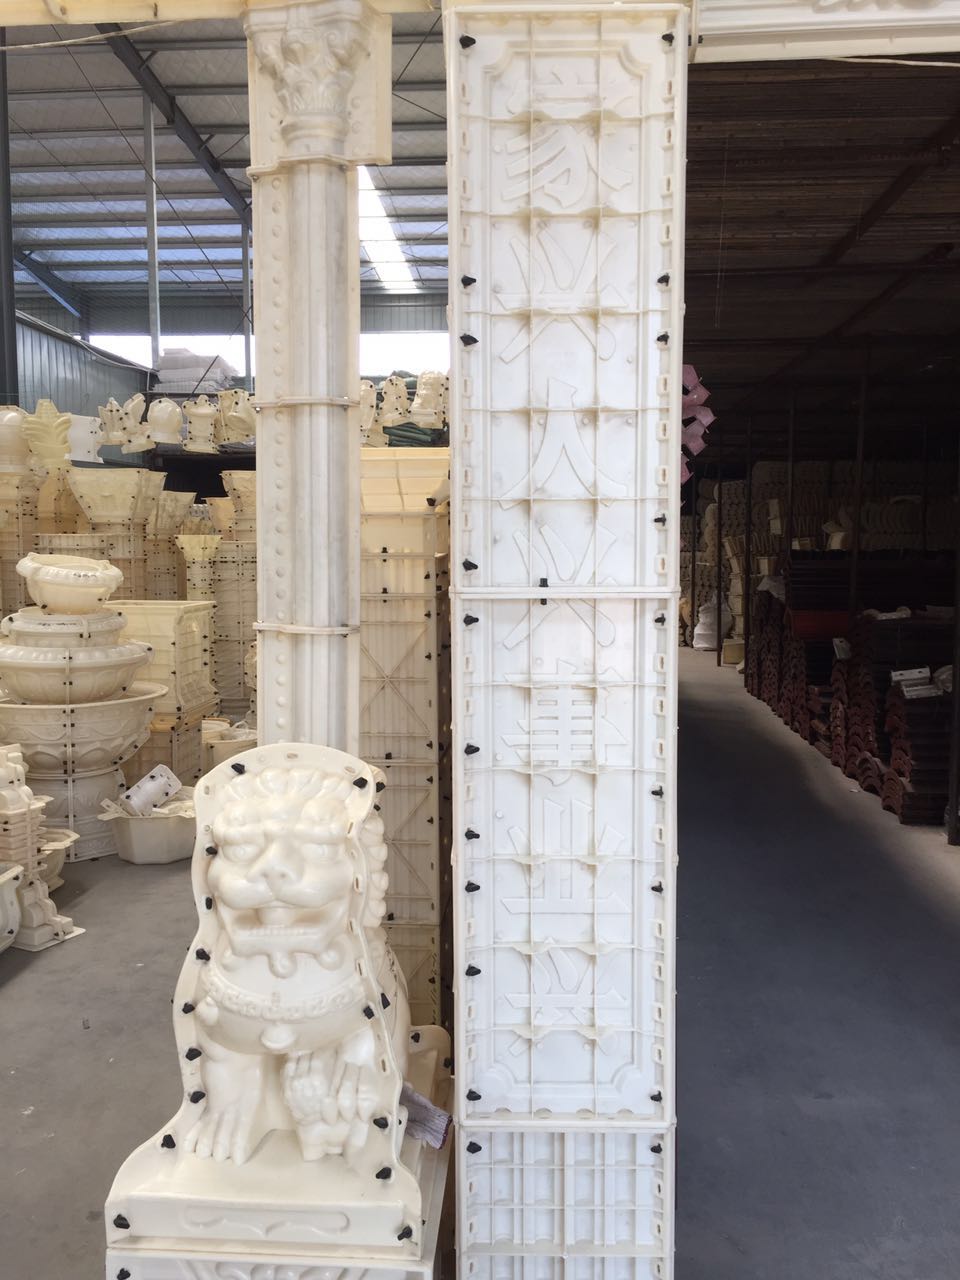 罗马柱模具厂家带你看罗马柱模具的加工工艺以及注意事项